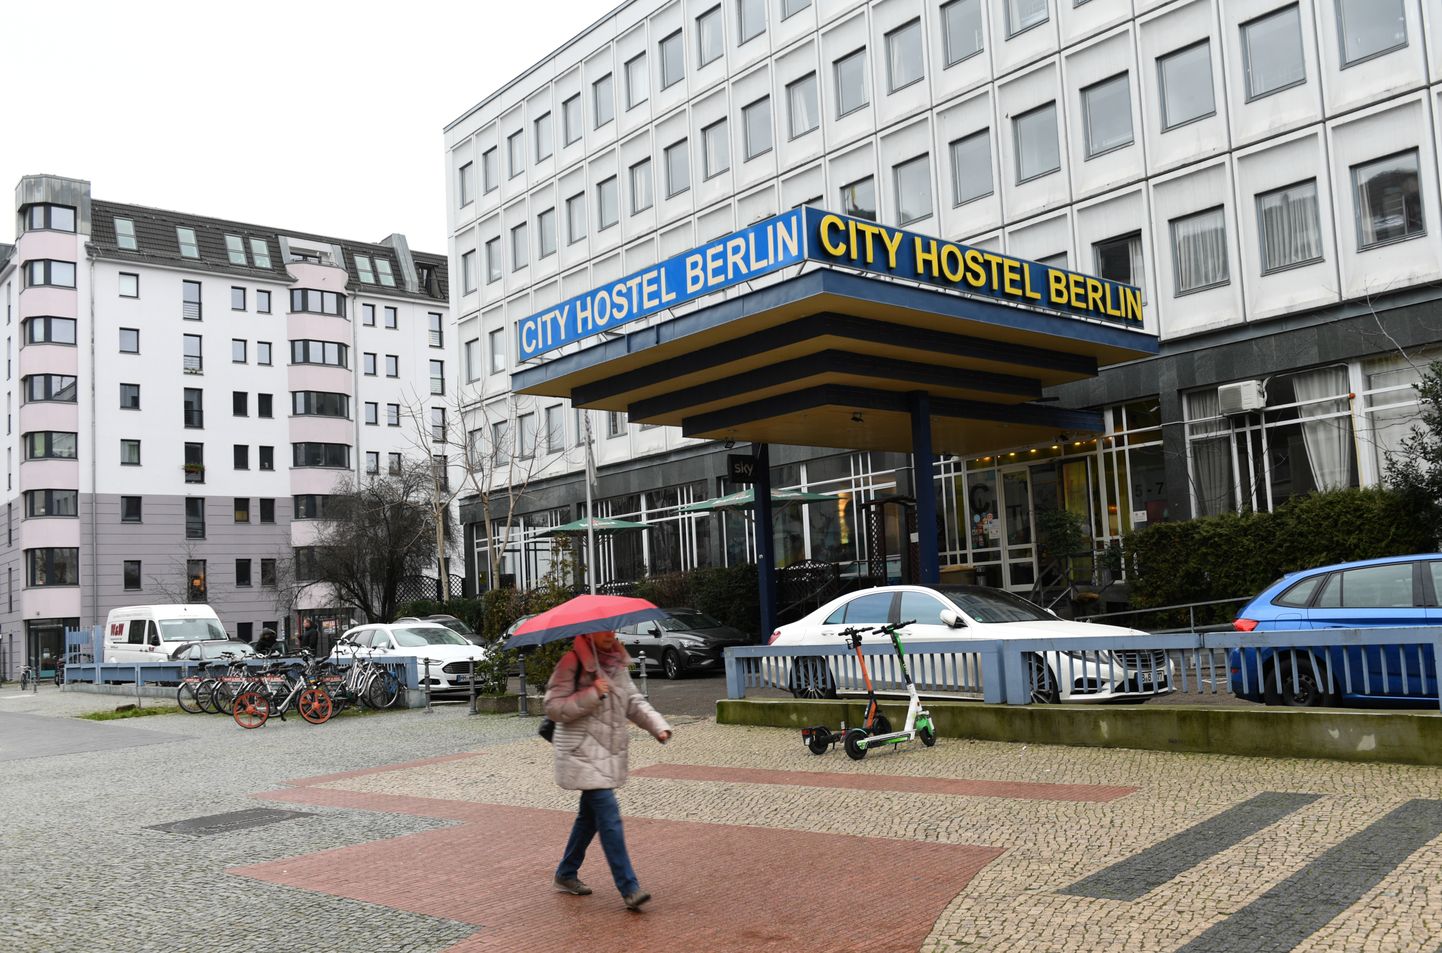 Berliinis Põhja-Korea saatkonna territooriumil asuv City Hostel Berlin.